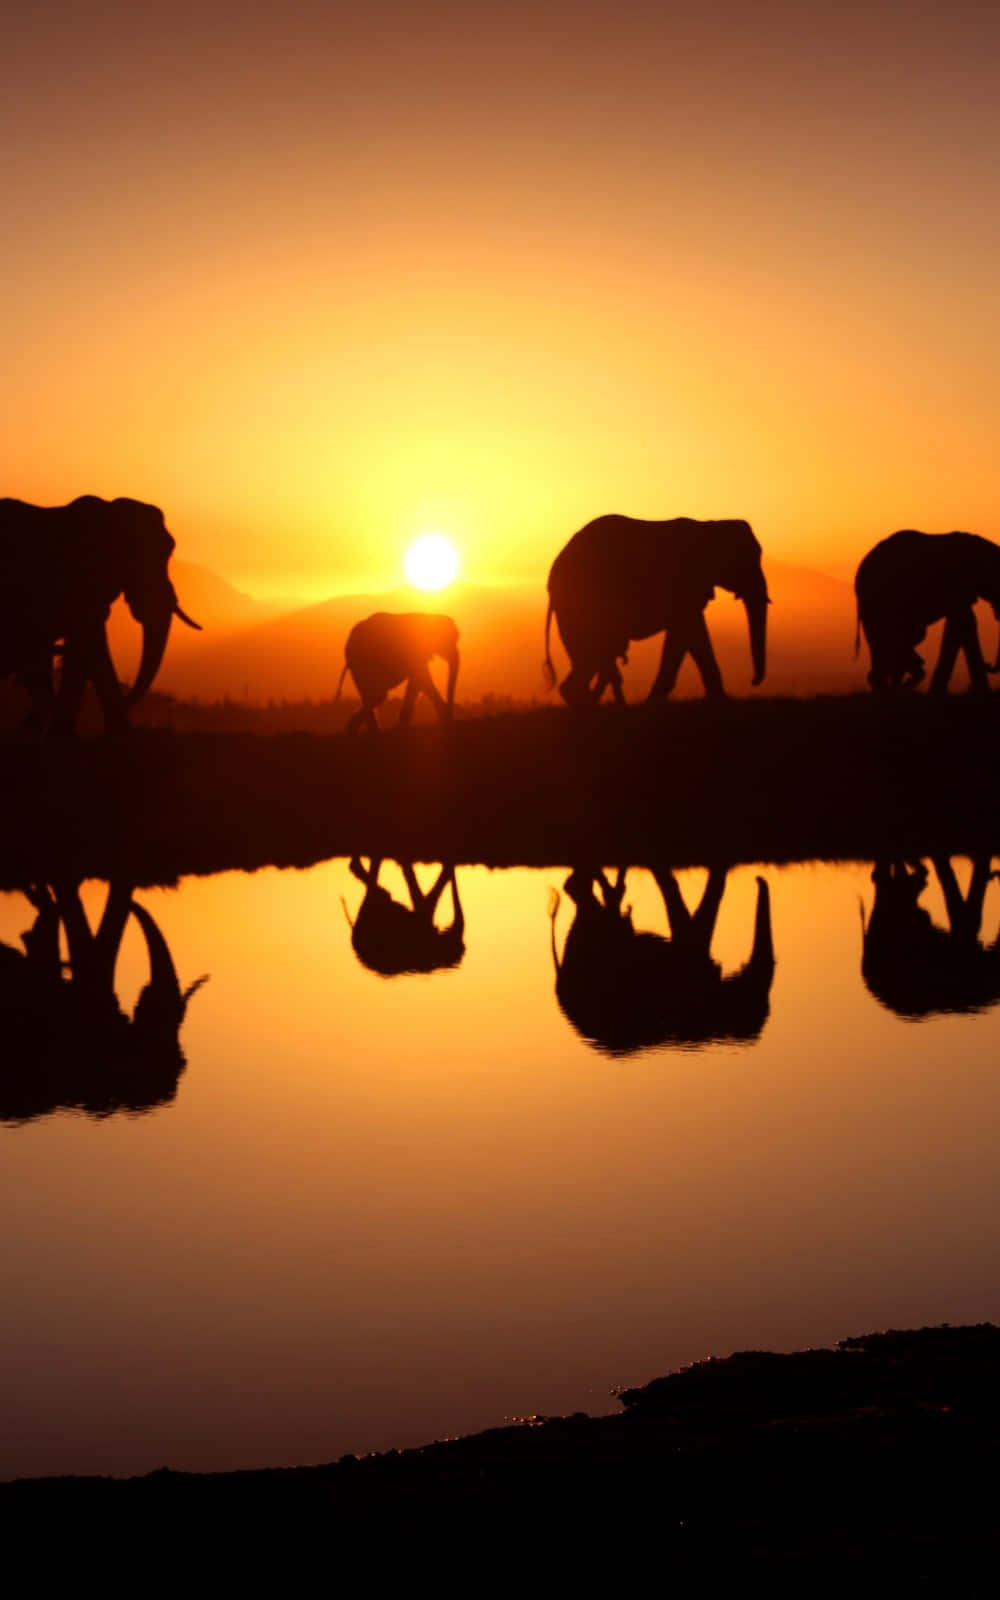 Einegruppe Von Elefanten, Die Bei Sonnenuntergang Im Wasser Spazieren Gehen.